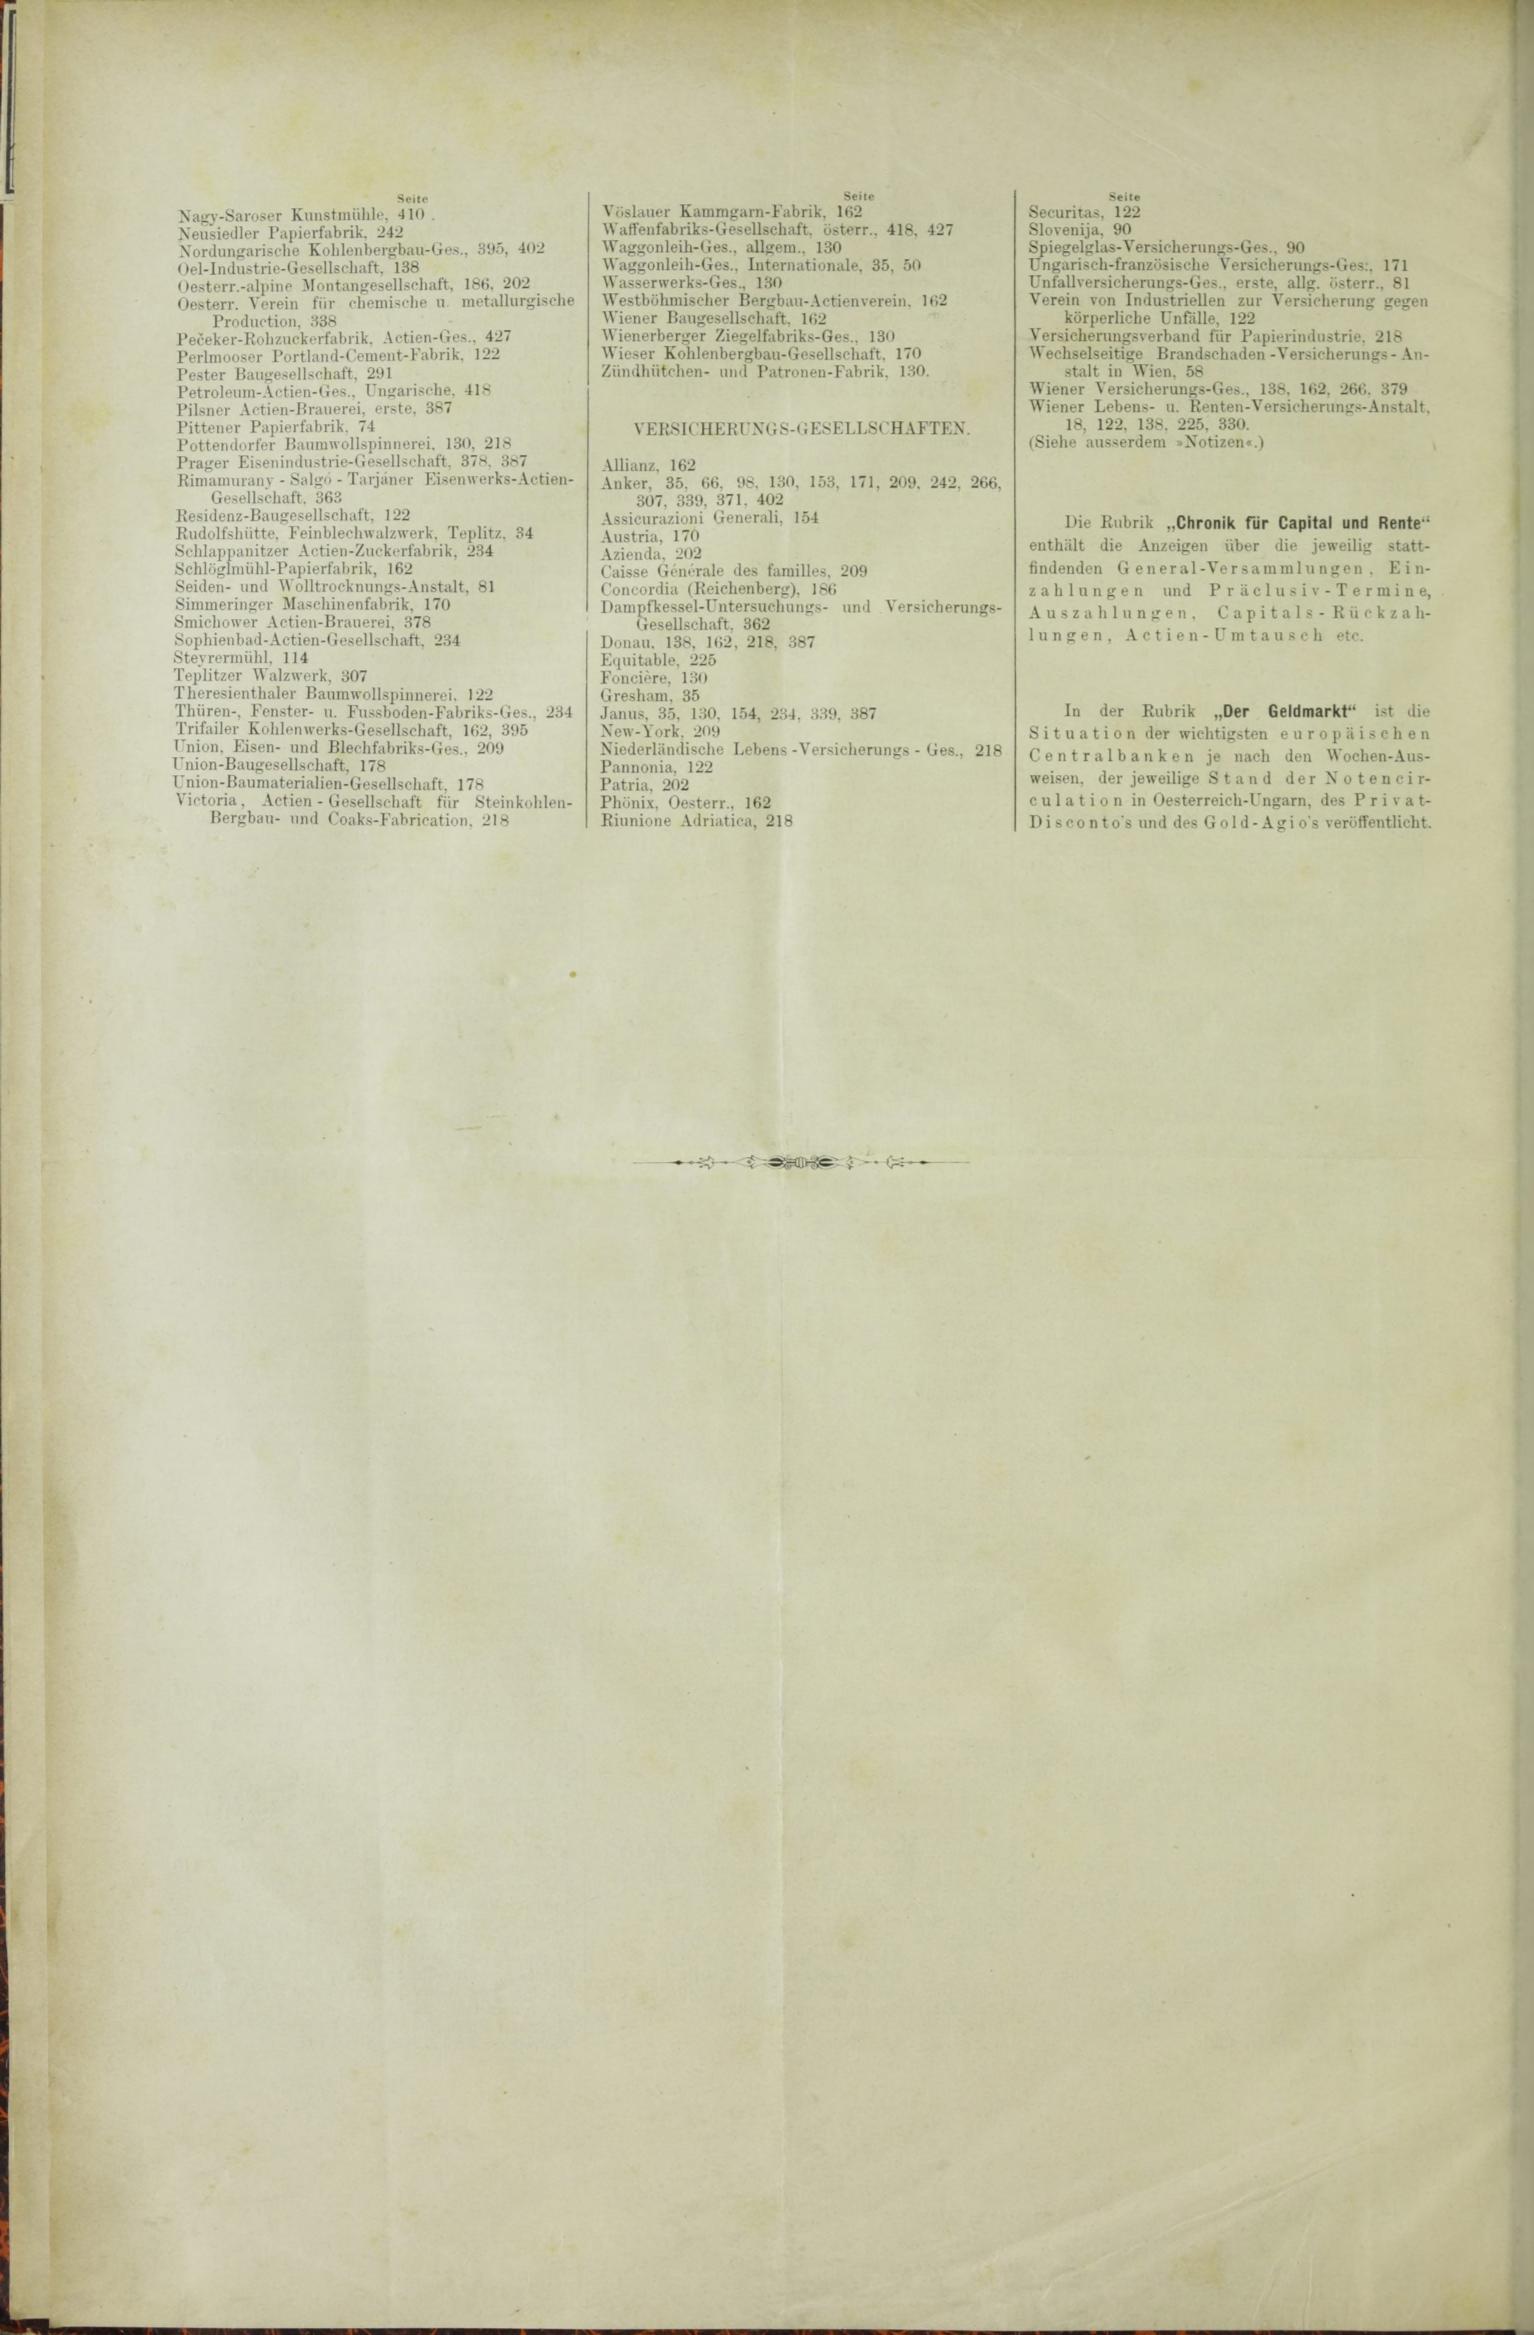 Der Tresor 27.08.1885 - Seite 12